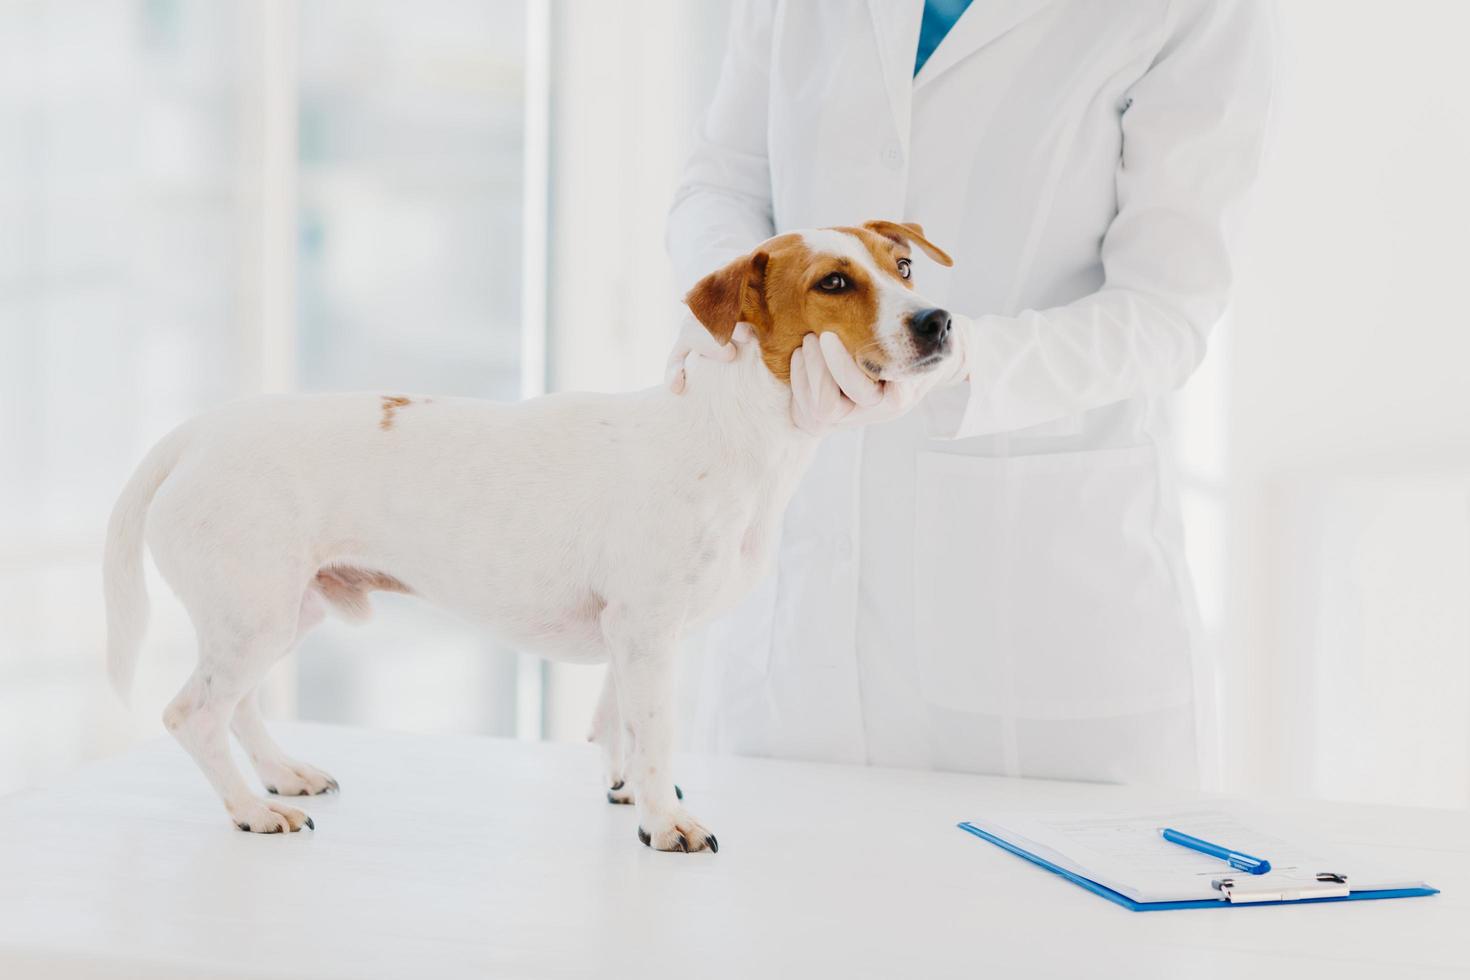 Unbekannter Tierarzt in weißem Kittel und Handschuhen untersucht Jack-Russell-Terrier-Hund am Arbeitsplatz, schreibt Rezept in Klemmbrett, arbeitet in Privatklinik. Haustier kommt zum Arzttermin foto